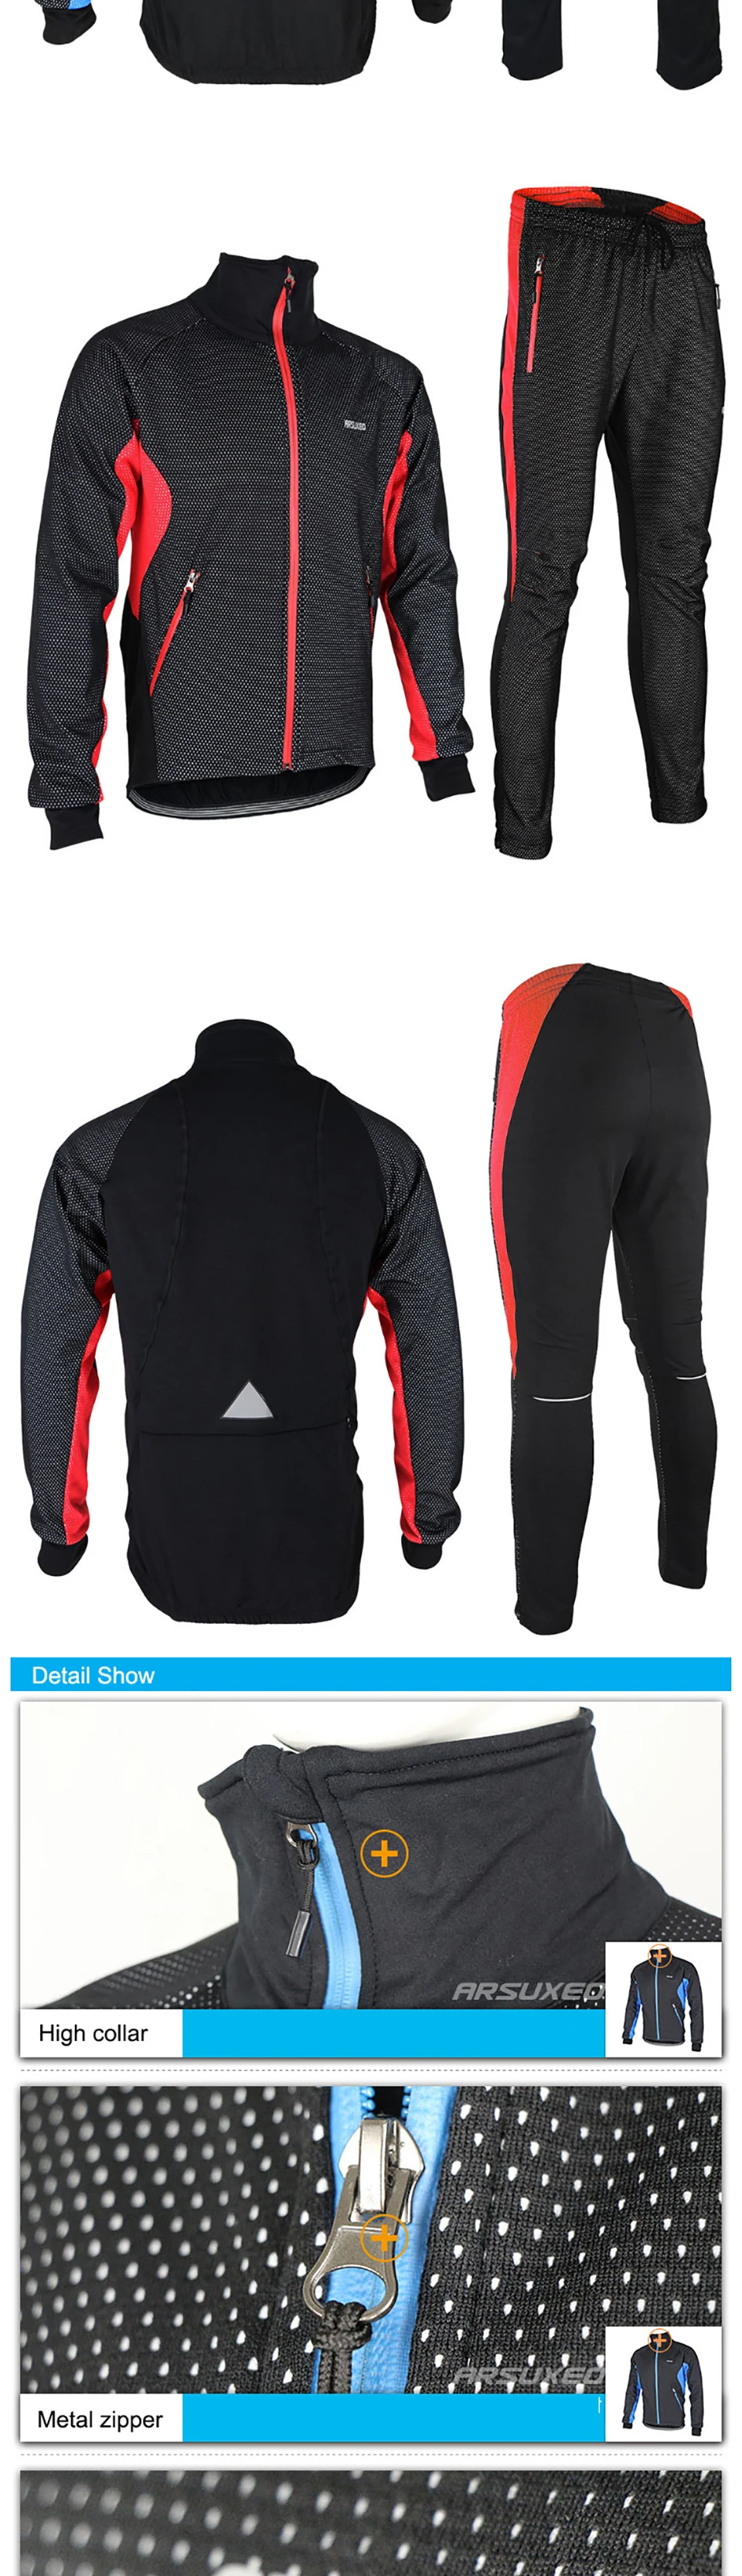 ARSUXEO велосипедная зимняя куртка наборы теплый велосипед одежда ветрозащитная мягкая оболочка кофта для бега MTB велосипед брюки комплекты одежды